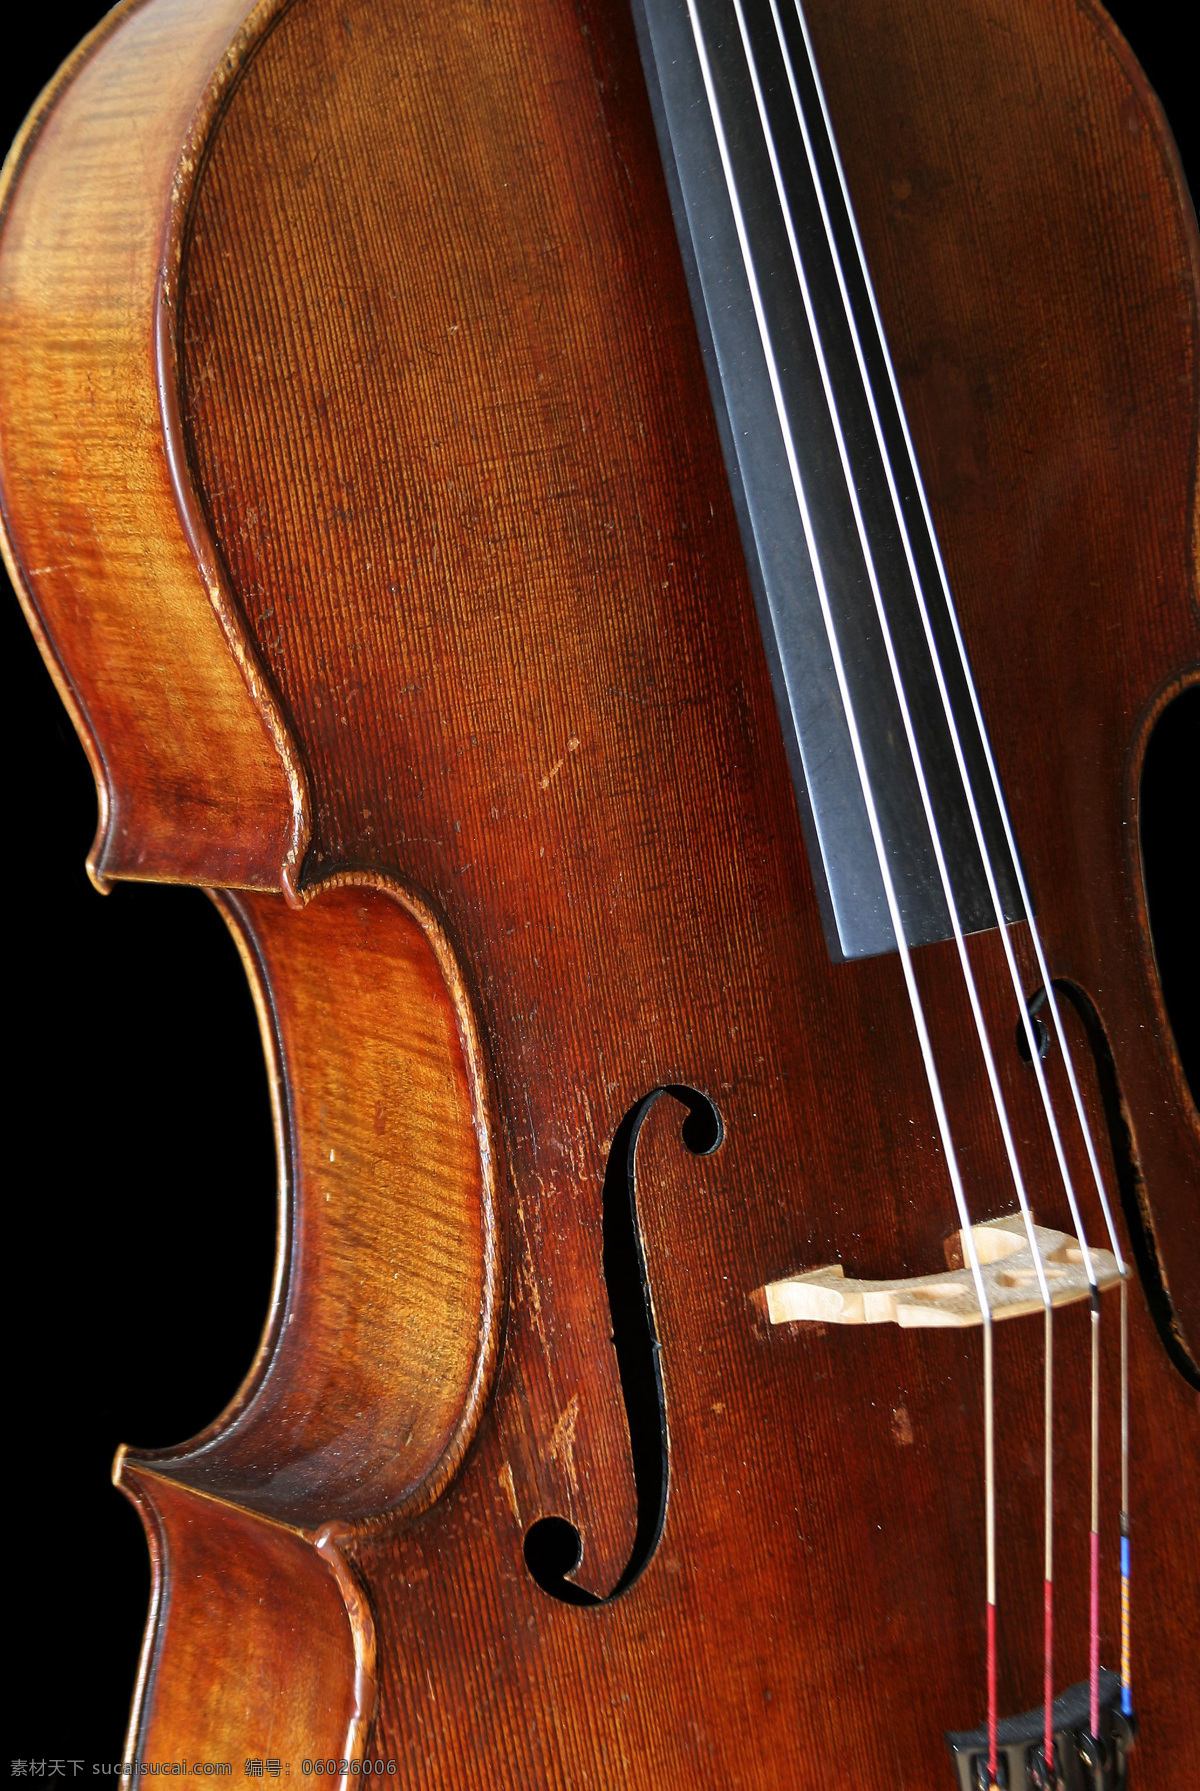 琴身 琴弦 音乐 艺术 乐器 弦乐器 小提琴 文化艺术 舞蹈音乐 摄影图库